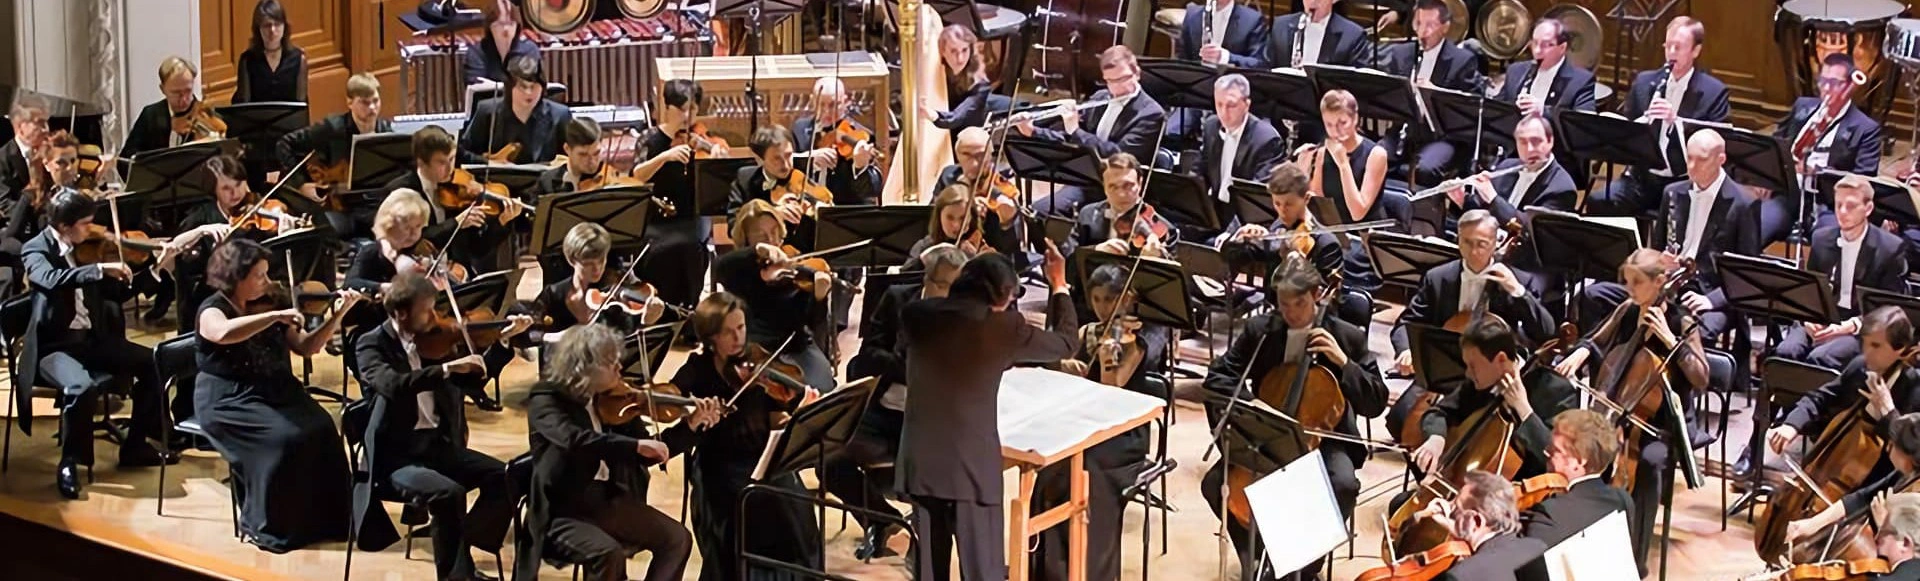 Концерт камерного оркестра Quantum Satis представит восхитительное аутентичное исполнение на старинных инструментах!